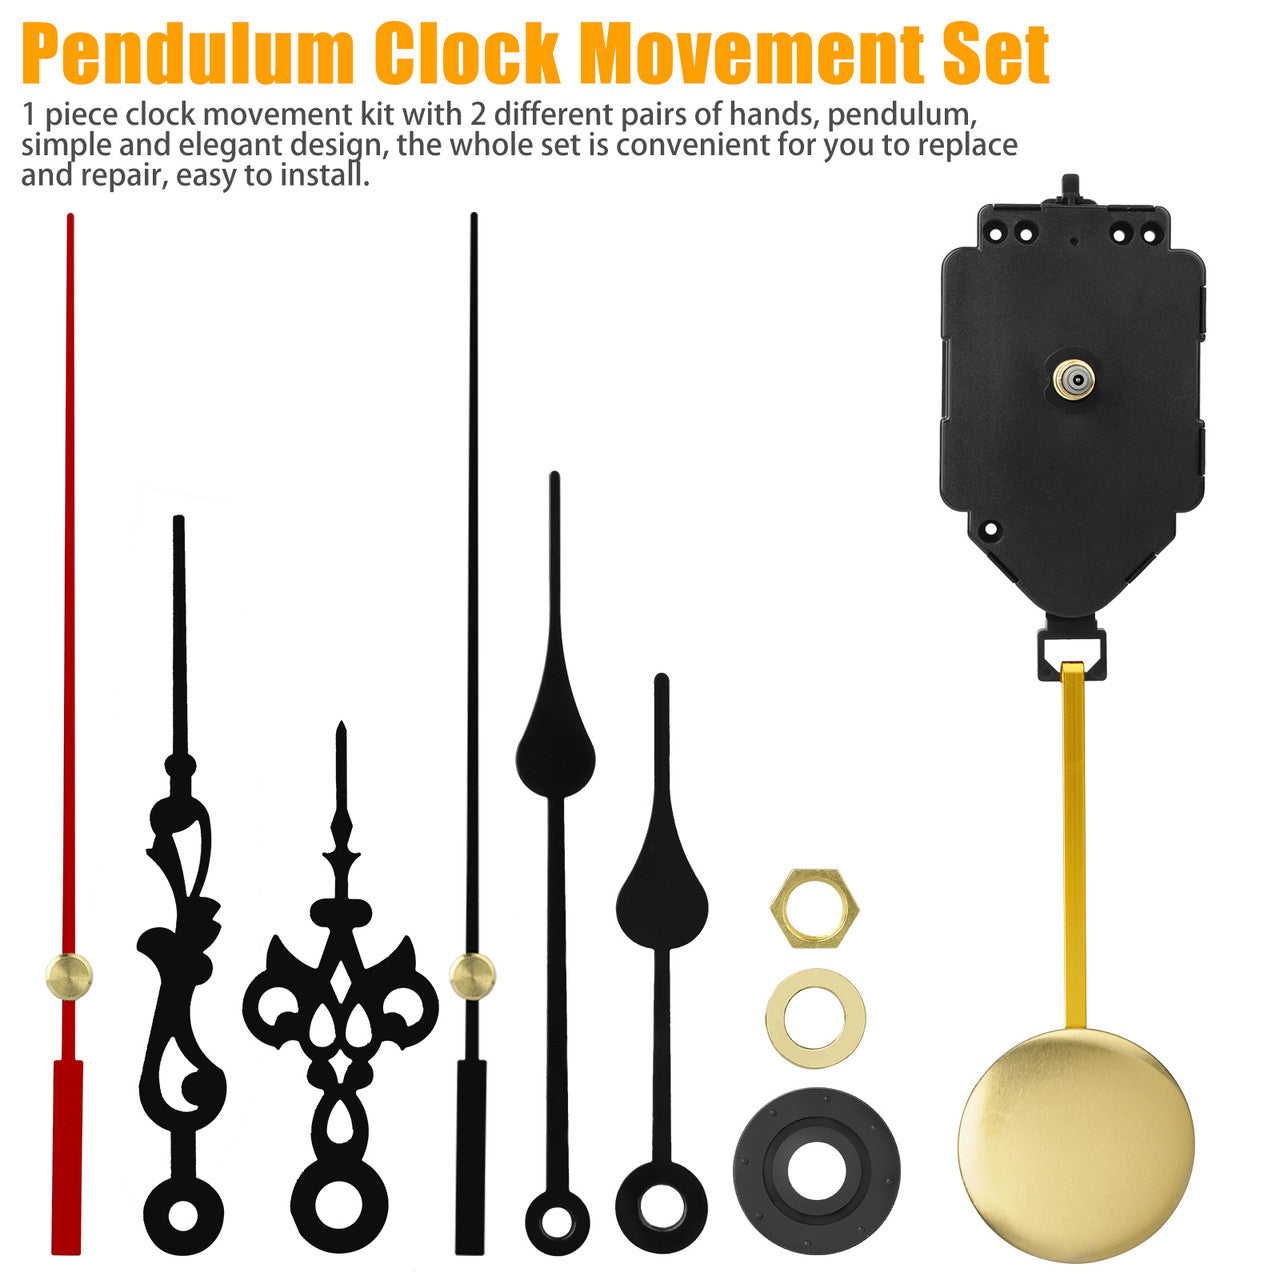 Replacement Repair Quartz Pendulum Clock Movement Set with 2 Pairs Hands